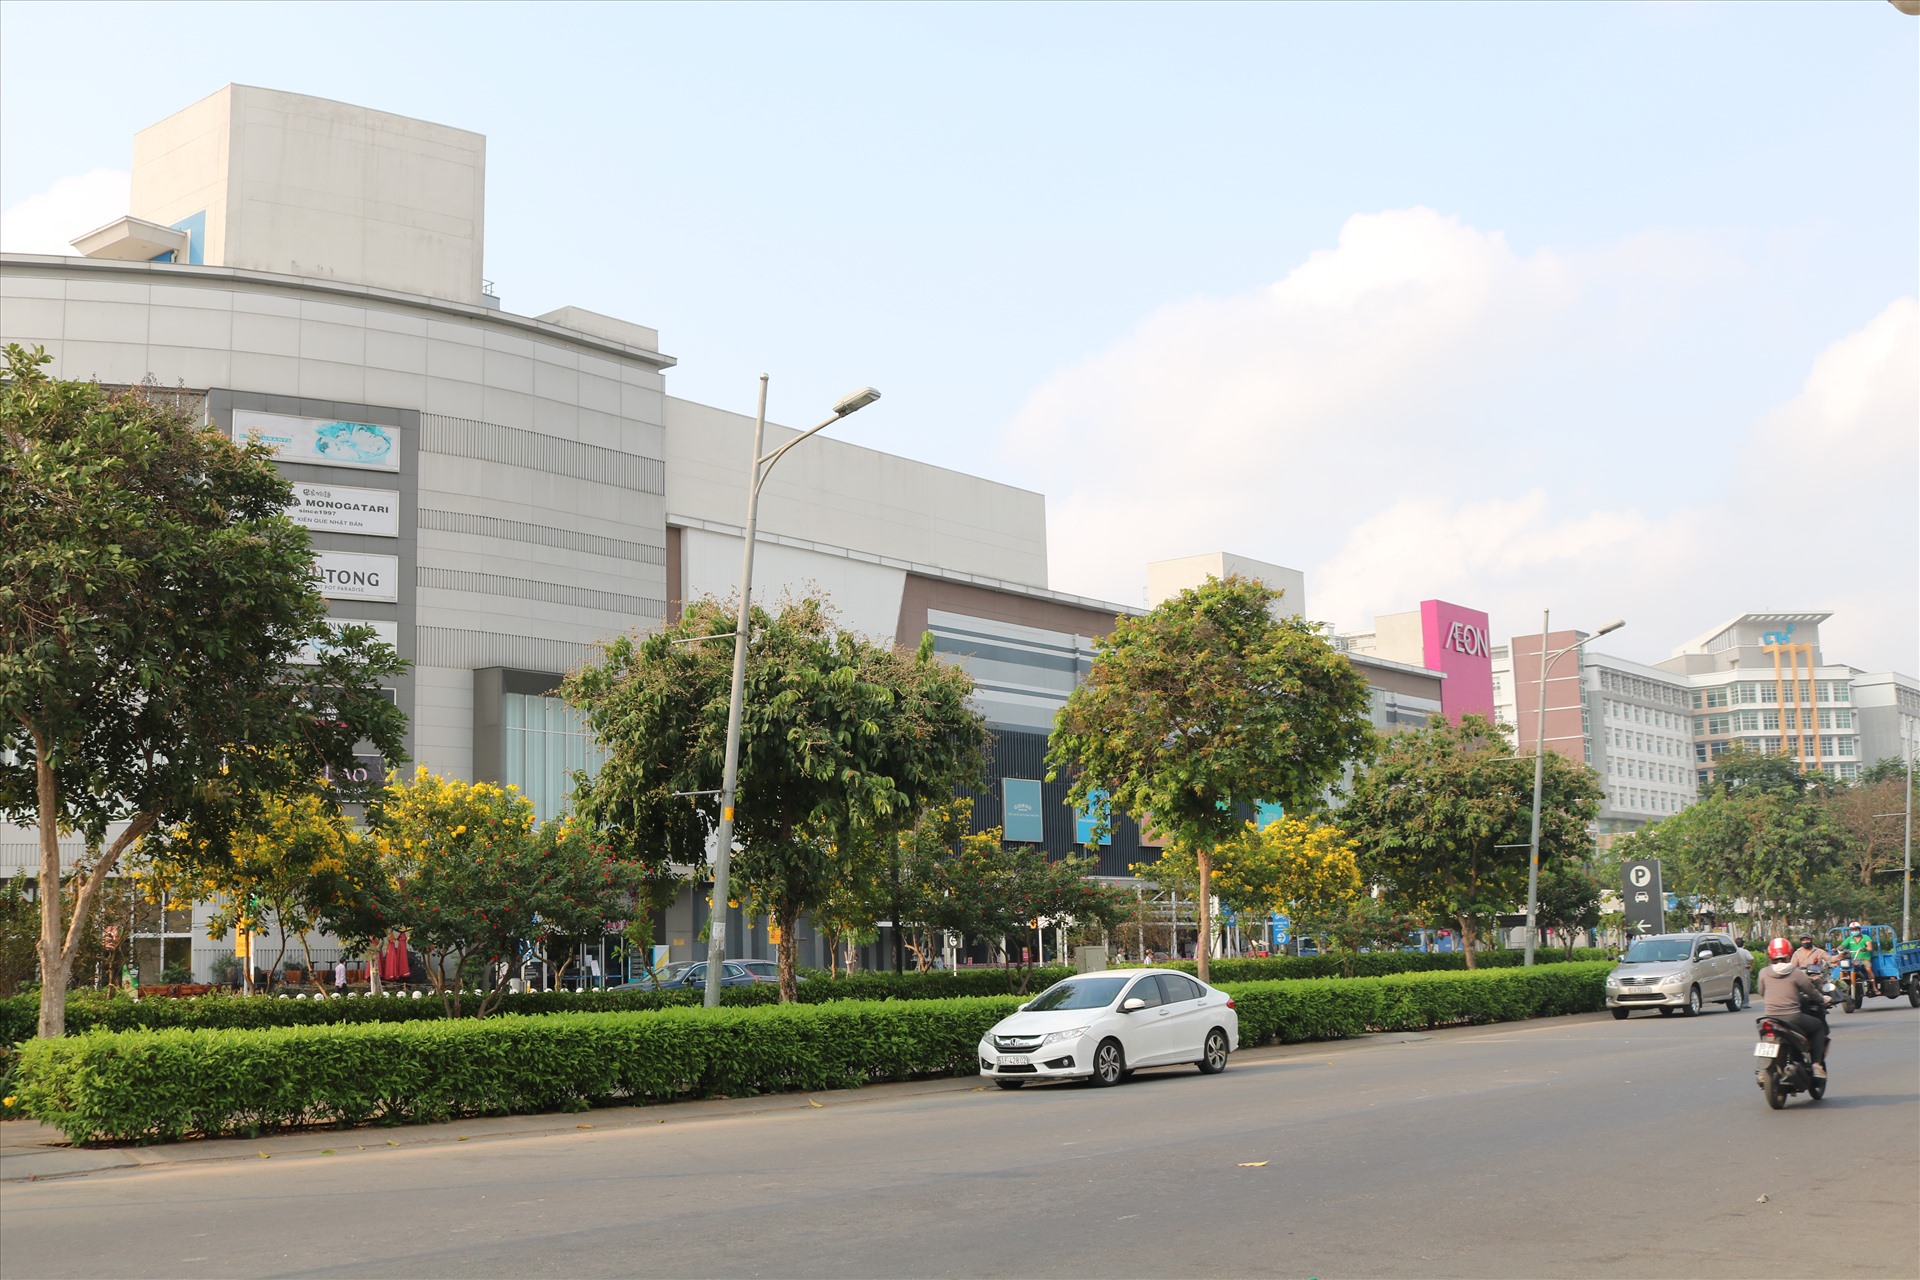 Khu Trung tâm thương mại Aeon được xây trong Khu Y tế kỹ thuật cao. Ảnh: Huân Cao